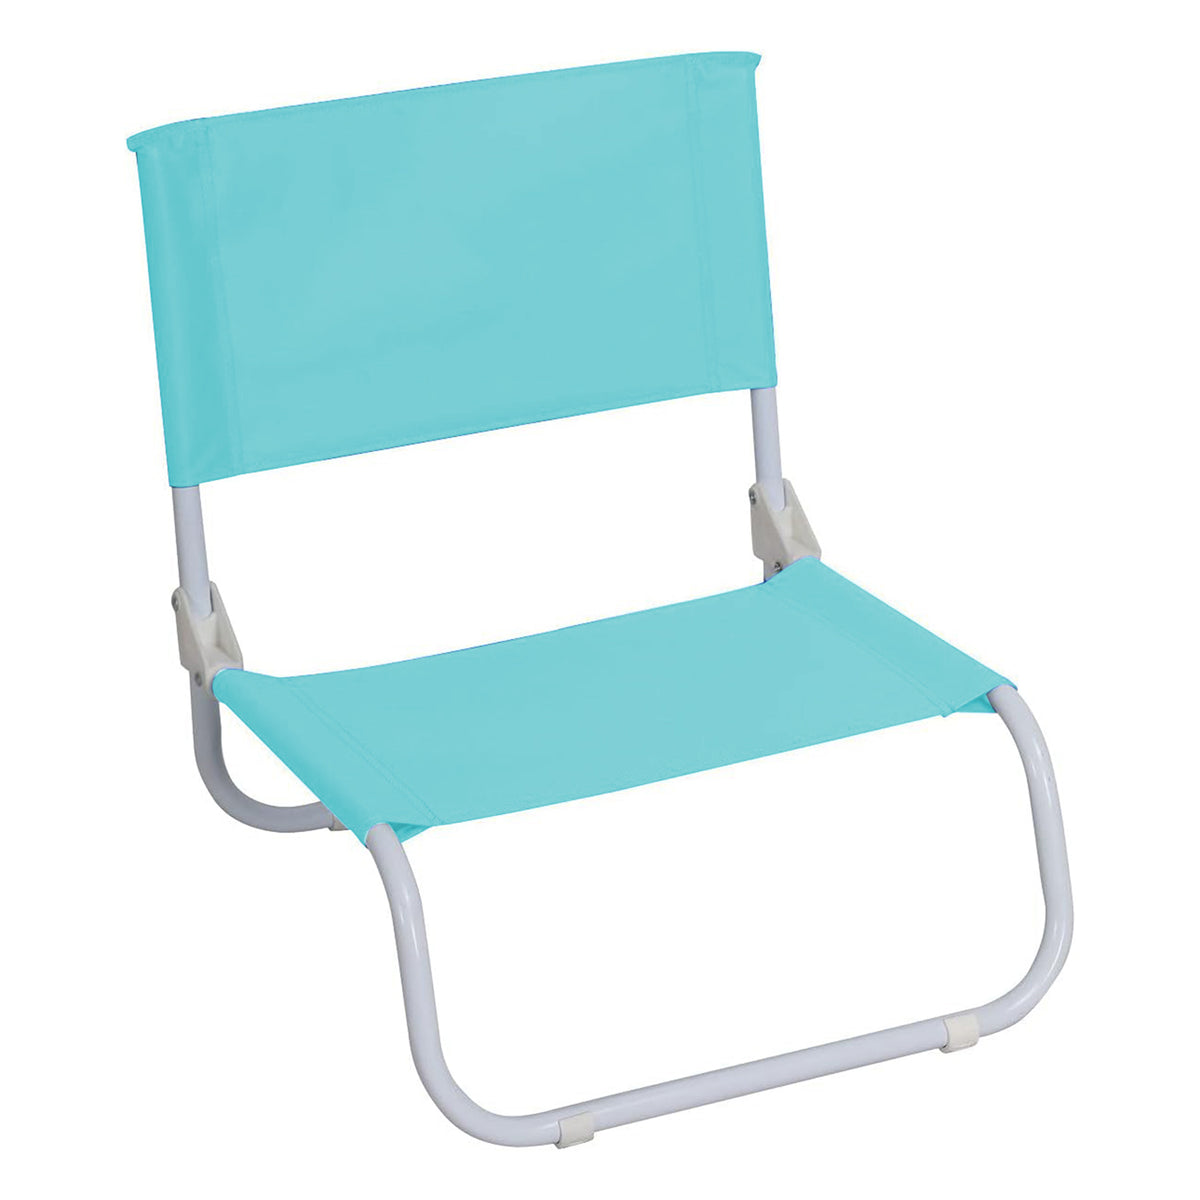 كرسي شاطئ أرضي قابل للطي ،لون أزرق فاتح الحجم: 50x45x50سم